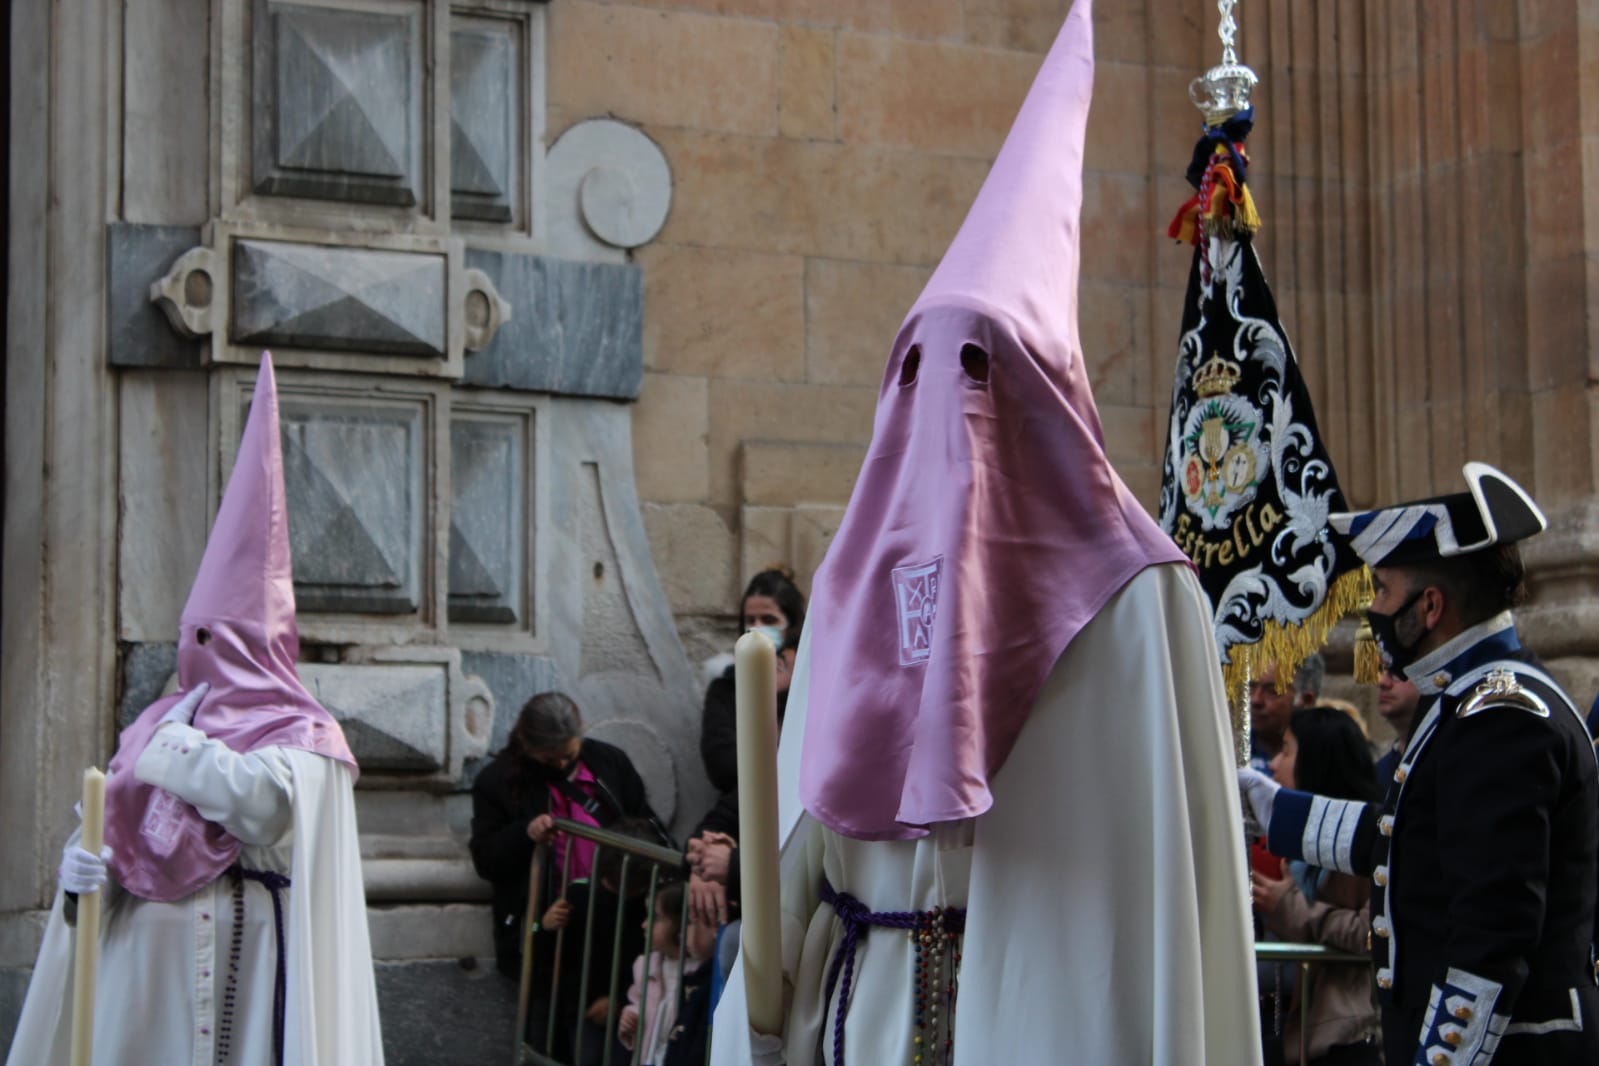 Una recogida Seráfica procesiona por Salamanca sin el paso de Jesús ante Pilatos